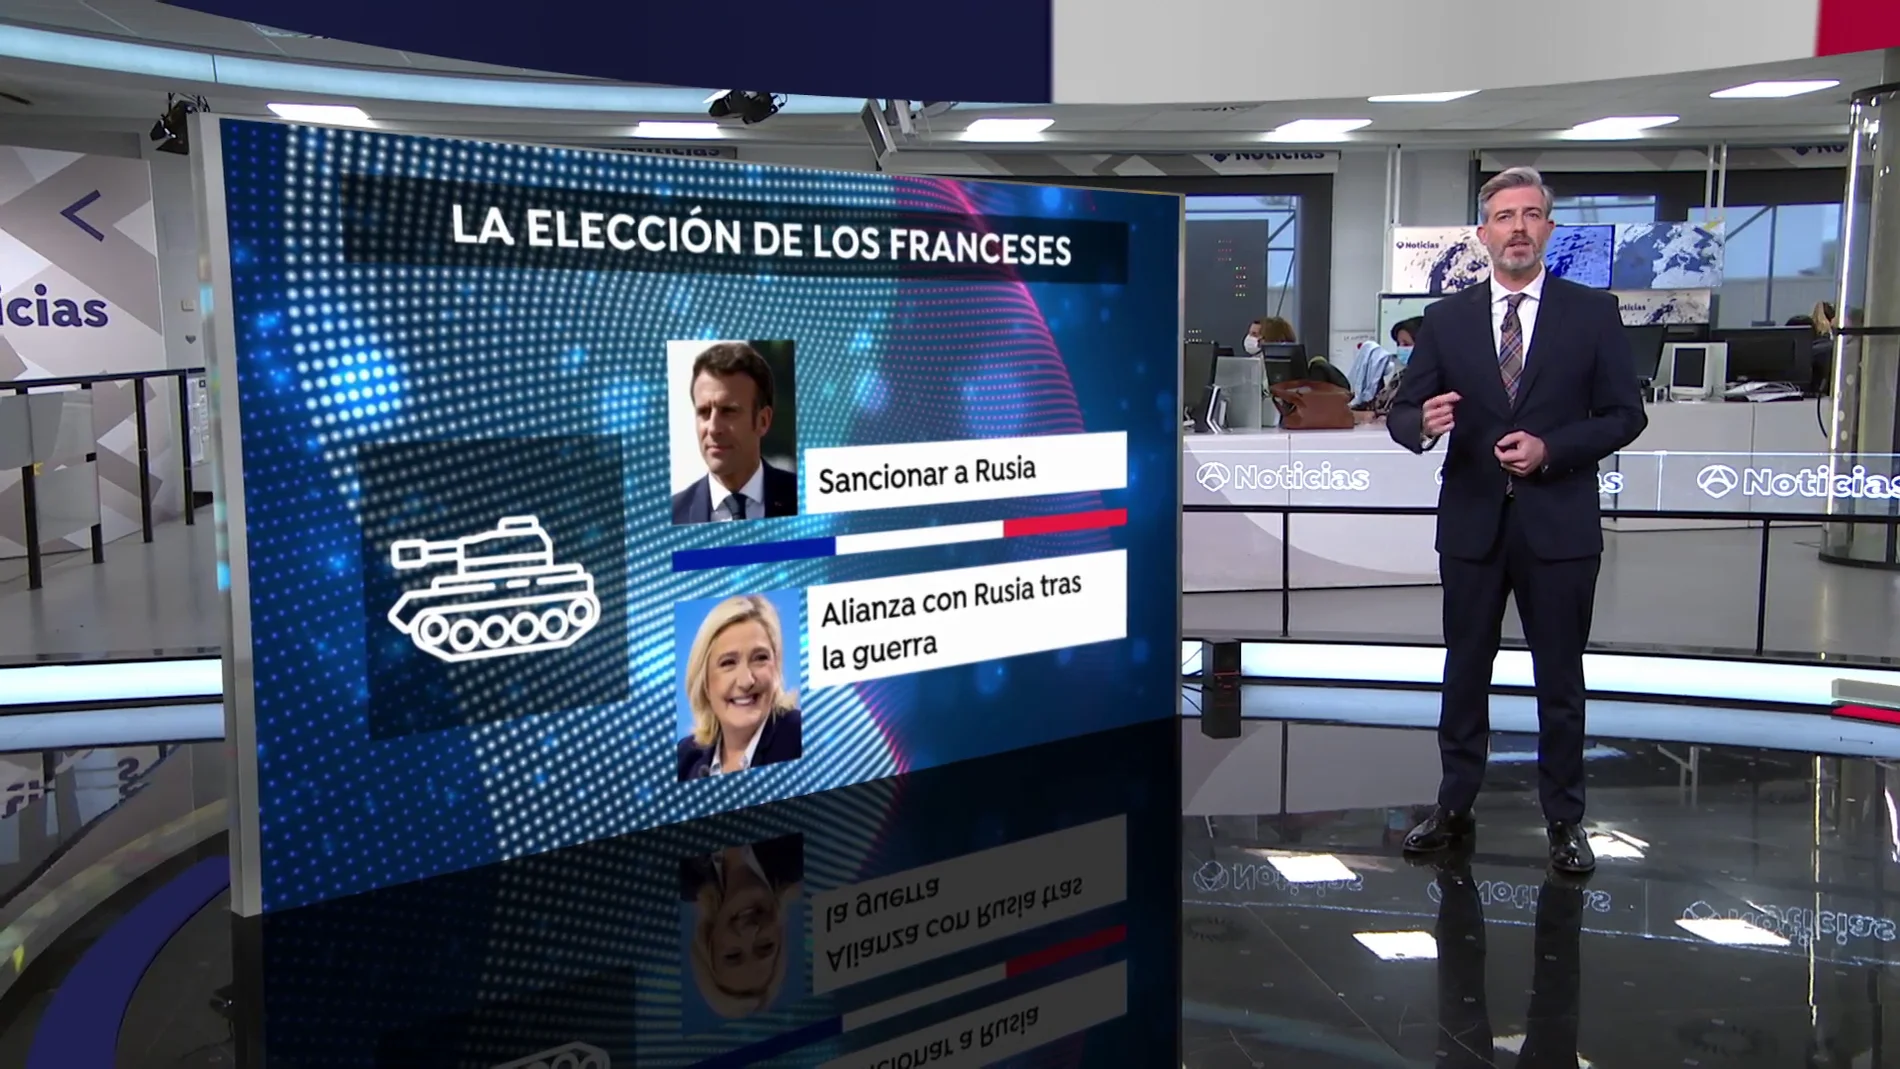 ¿Qué diferencia hay en los programas electorales de Macron y Le Pen en las elecciones de Francia?